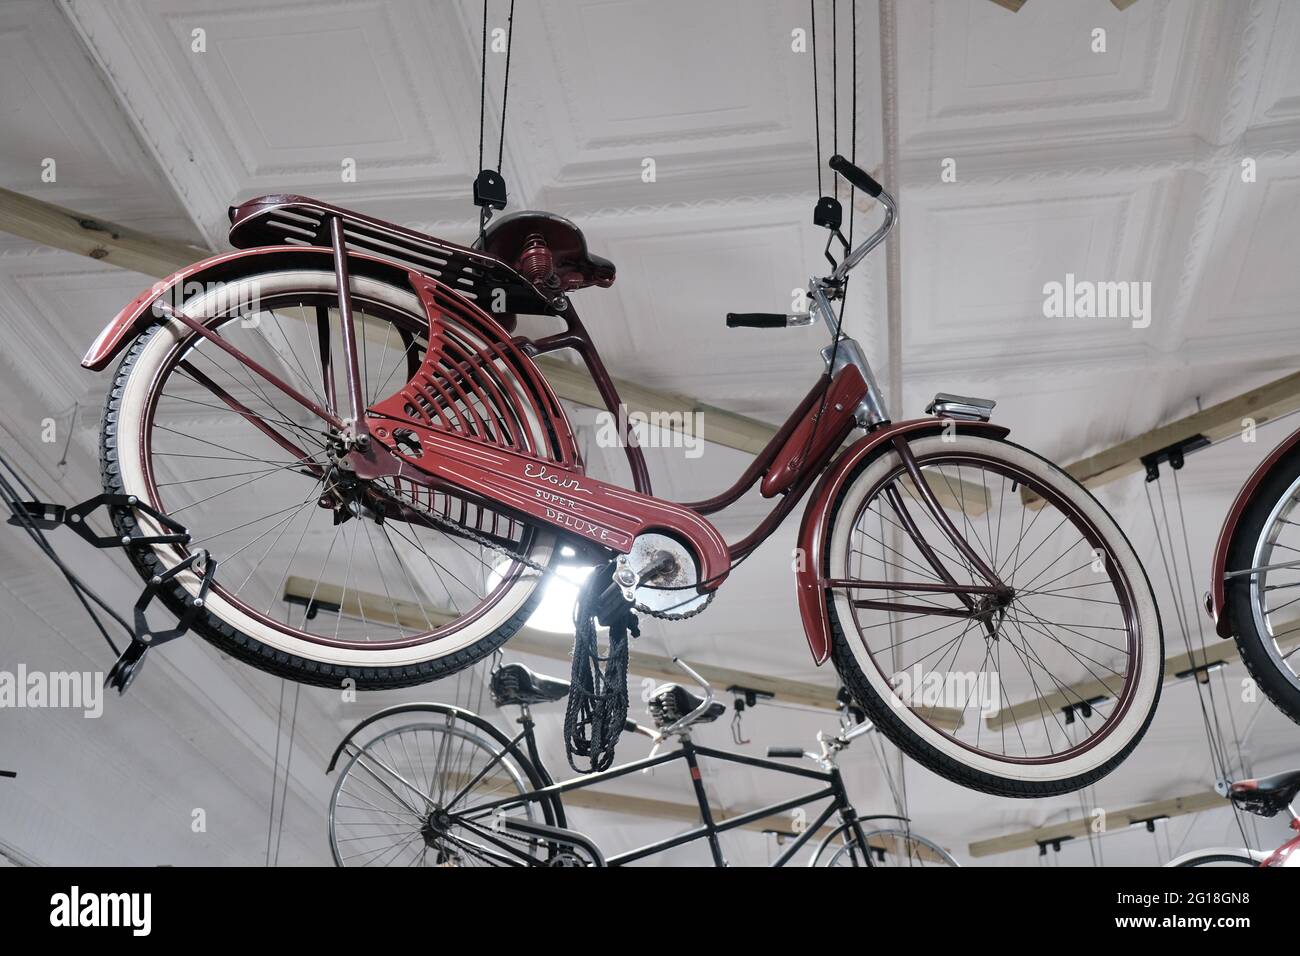 Esta es una antigua bicicleta especial de lujo, esta marca fue vendida por  Sears antes de la Guerra Mundial de 2. Bicicleta muy vieja, bastante  fresca. Me tiro esto en un bicyc